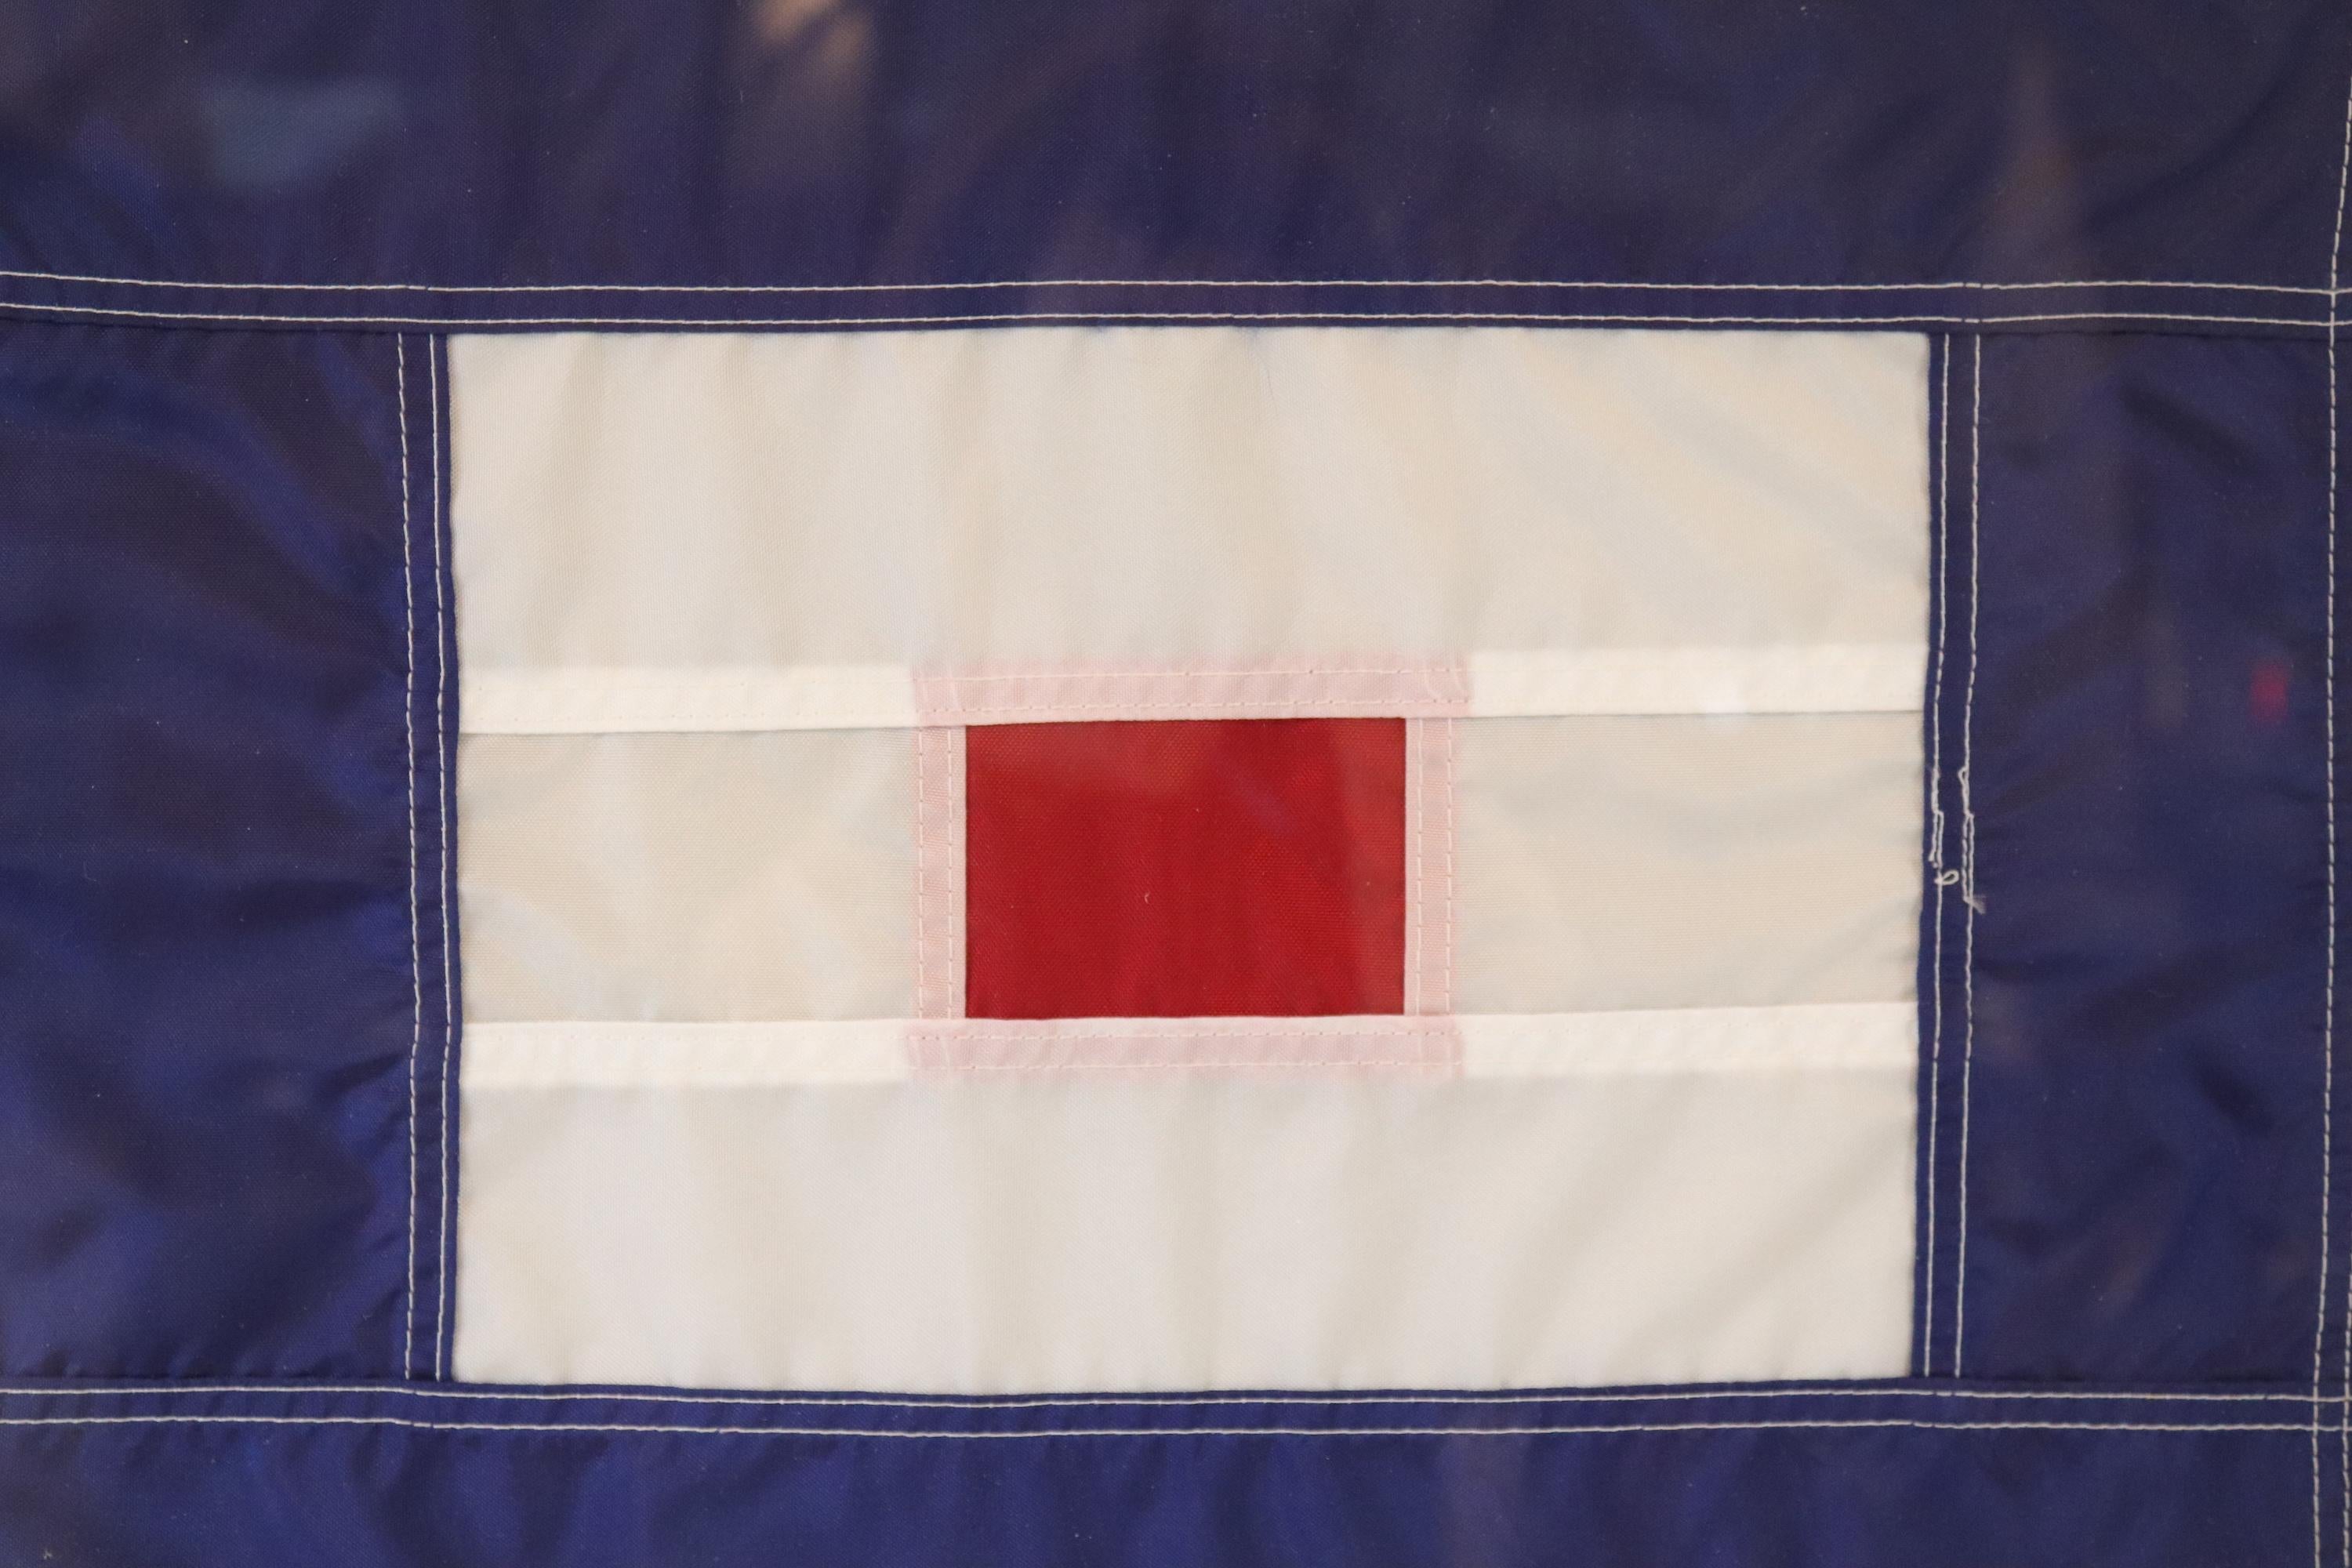 International maritime signal flag of nylon in frame. Flag stands for letter 